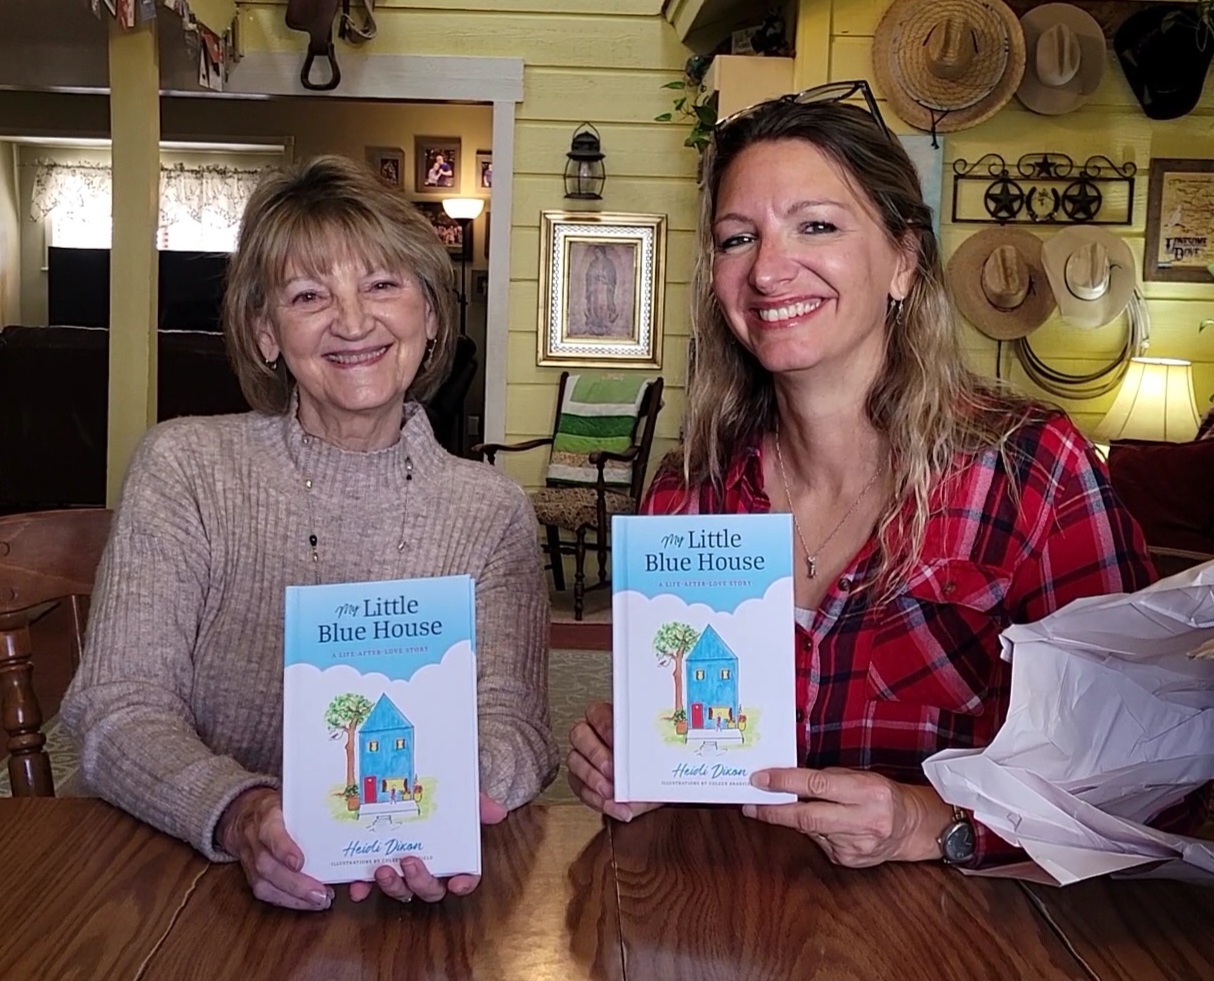 Author Heidi Dixon with Illustrator Coleen Bradfield